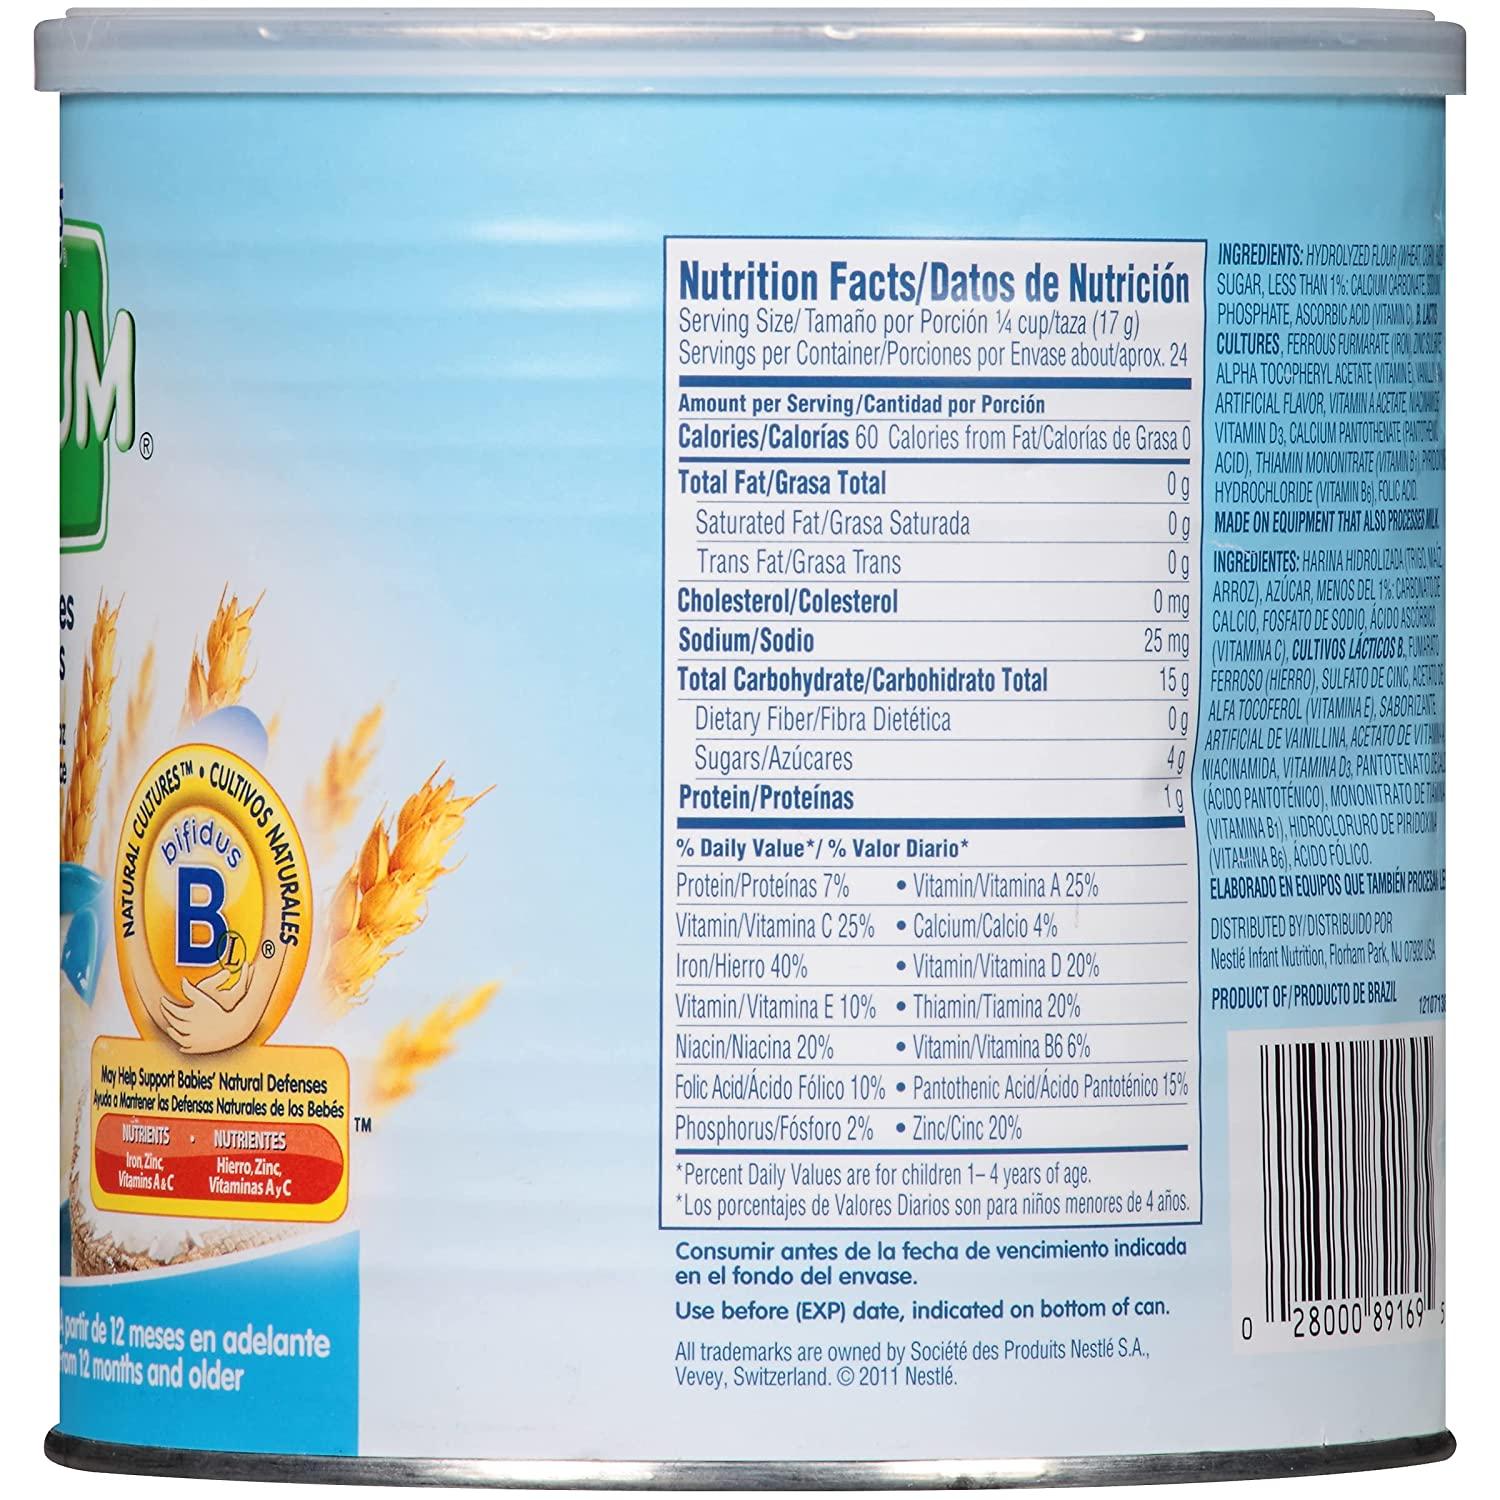 NESTUM 3 Cereales de Nestle Trigo, Maiz y Arroz 14.1 oz.